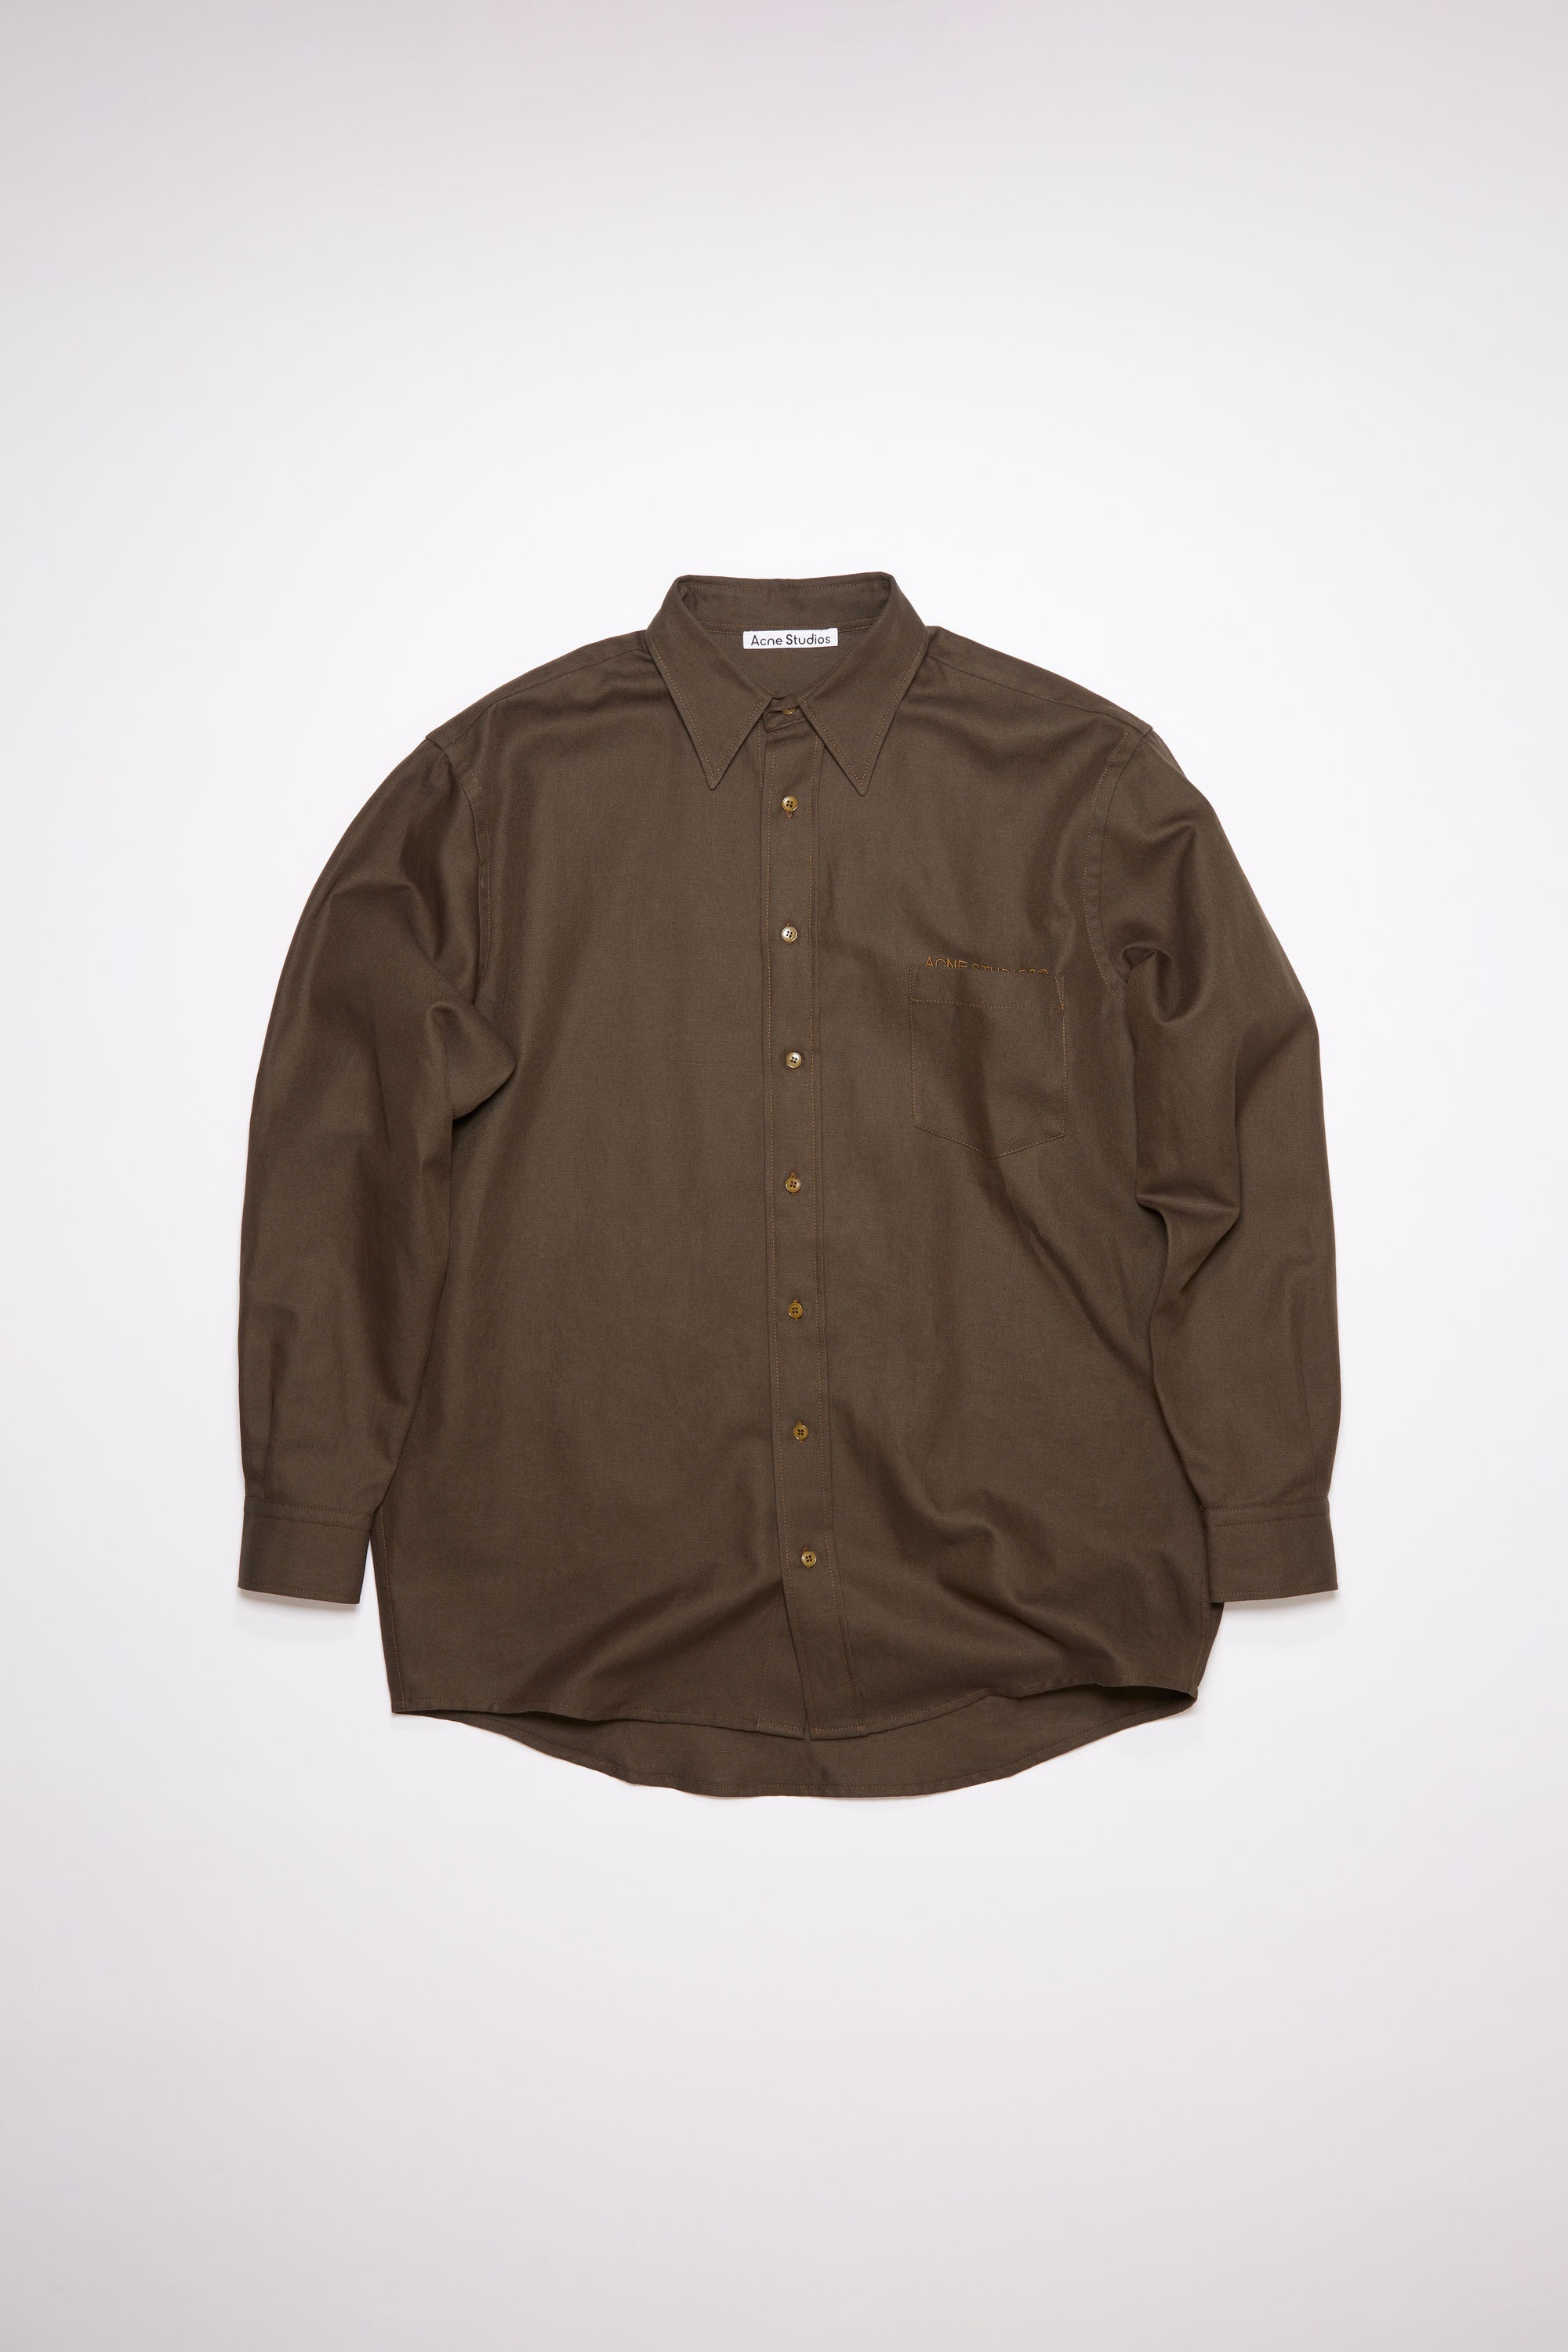 Acne Studios Linen blend shirt - Dark Olive | REVERSIBLE